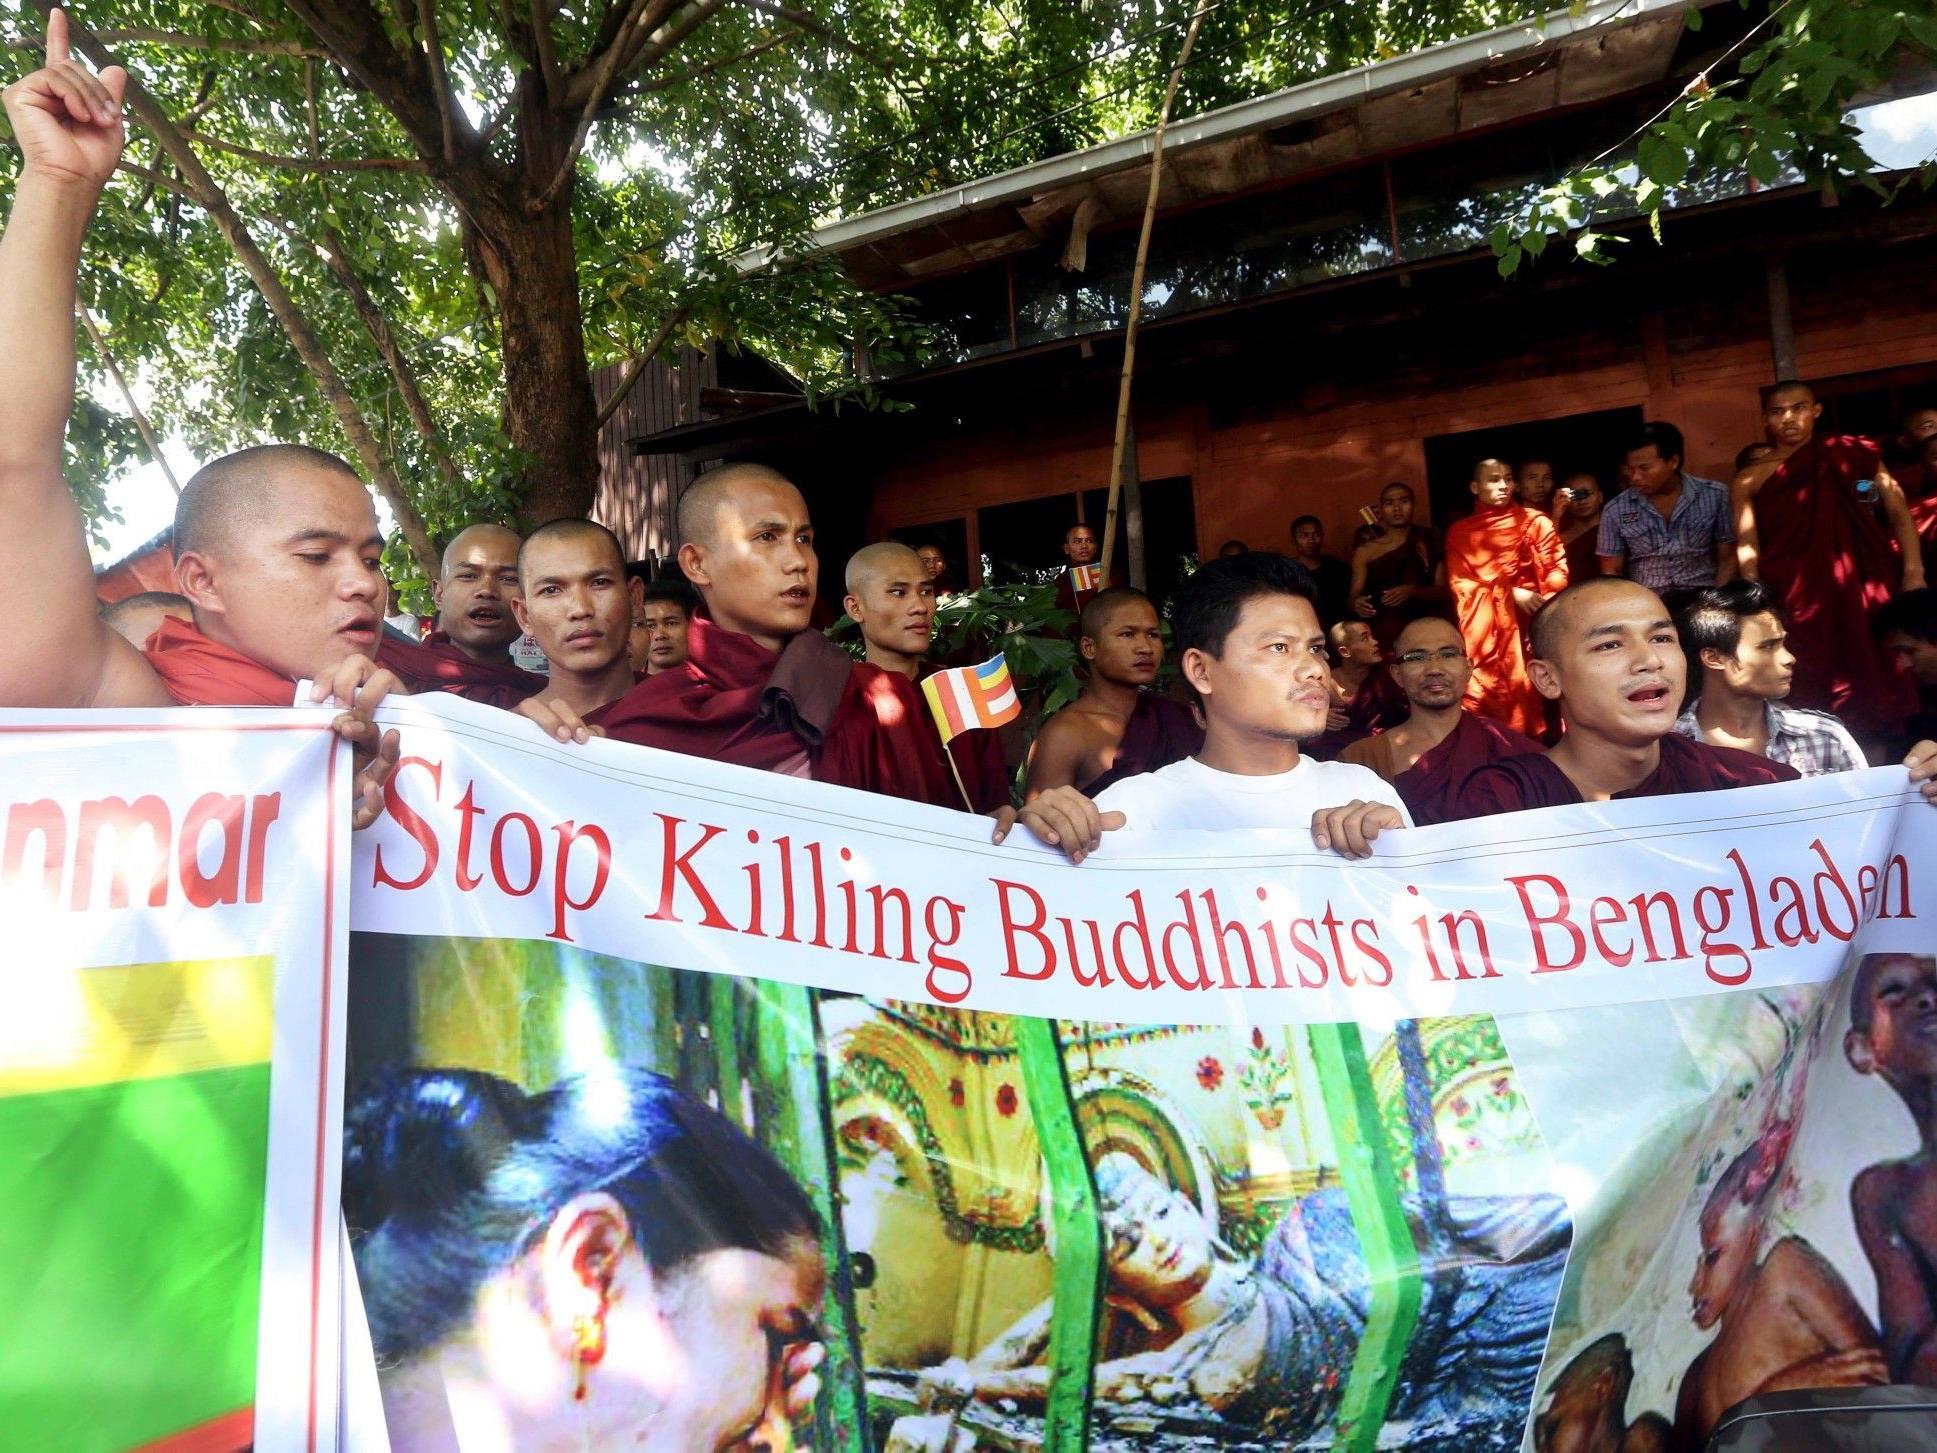 Burmesische Buddhisten protestieren gegen die Tötung von Buddhisten in Bangladesh. Zeitgleich werden in Burma Muslime getötet.